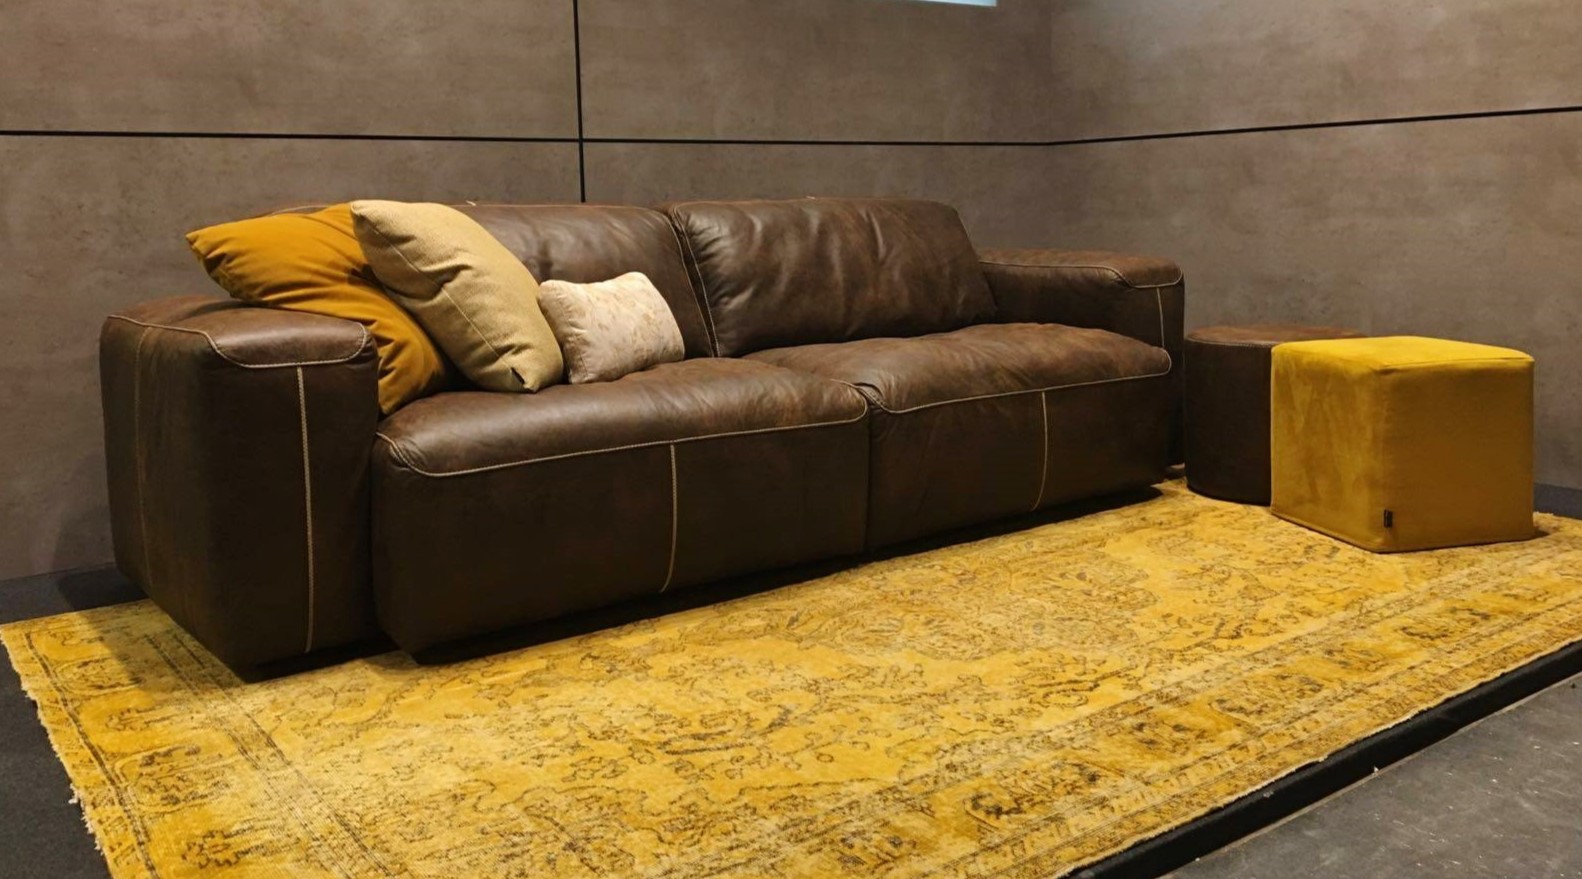 Для украшения дивана можно использовать несколько подушек